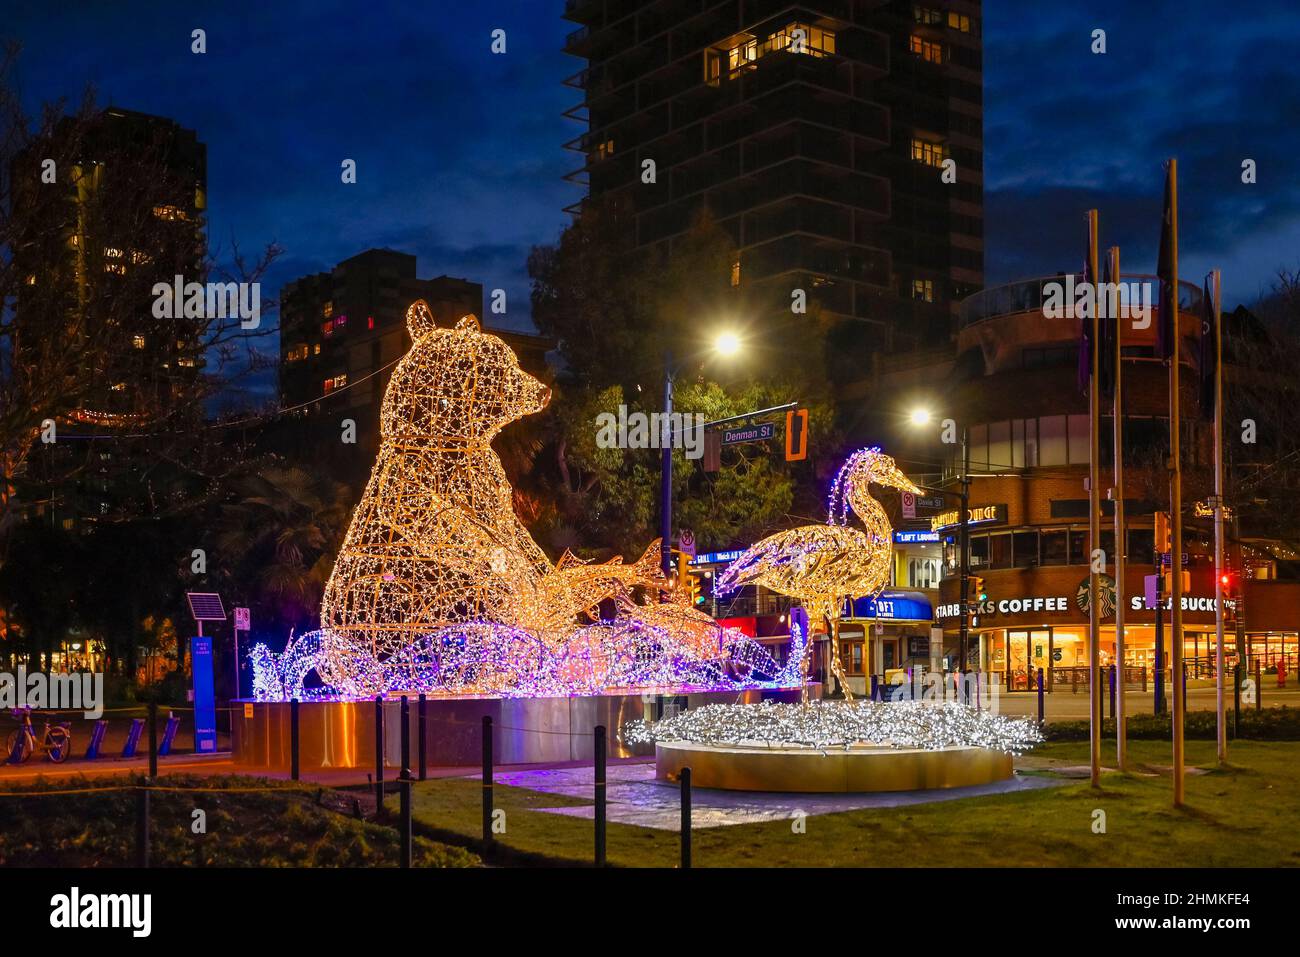 DAVIE, installazione artistica illuminata di Grizzly Bear, Lumiere Festival, Vancouver, British Columbia, Canada Foto Stock